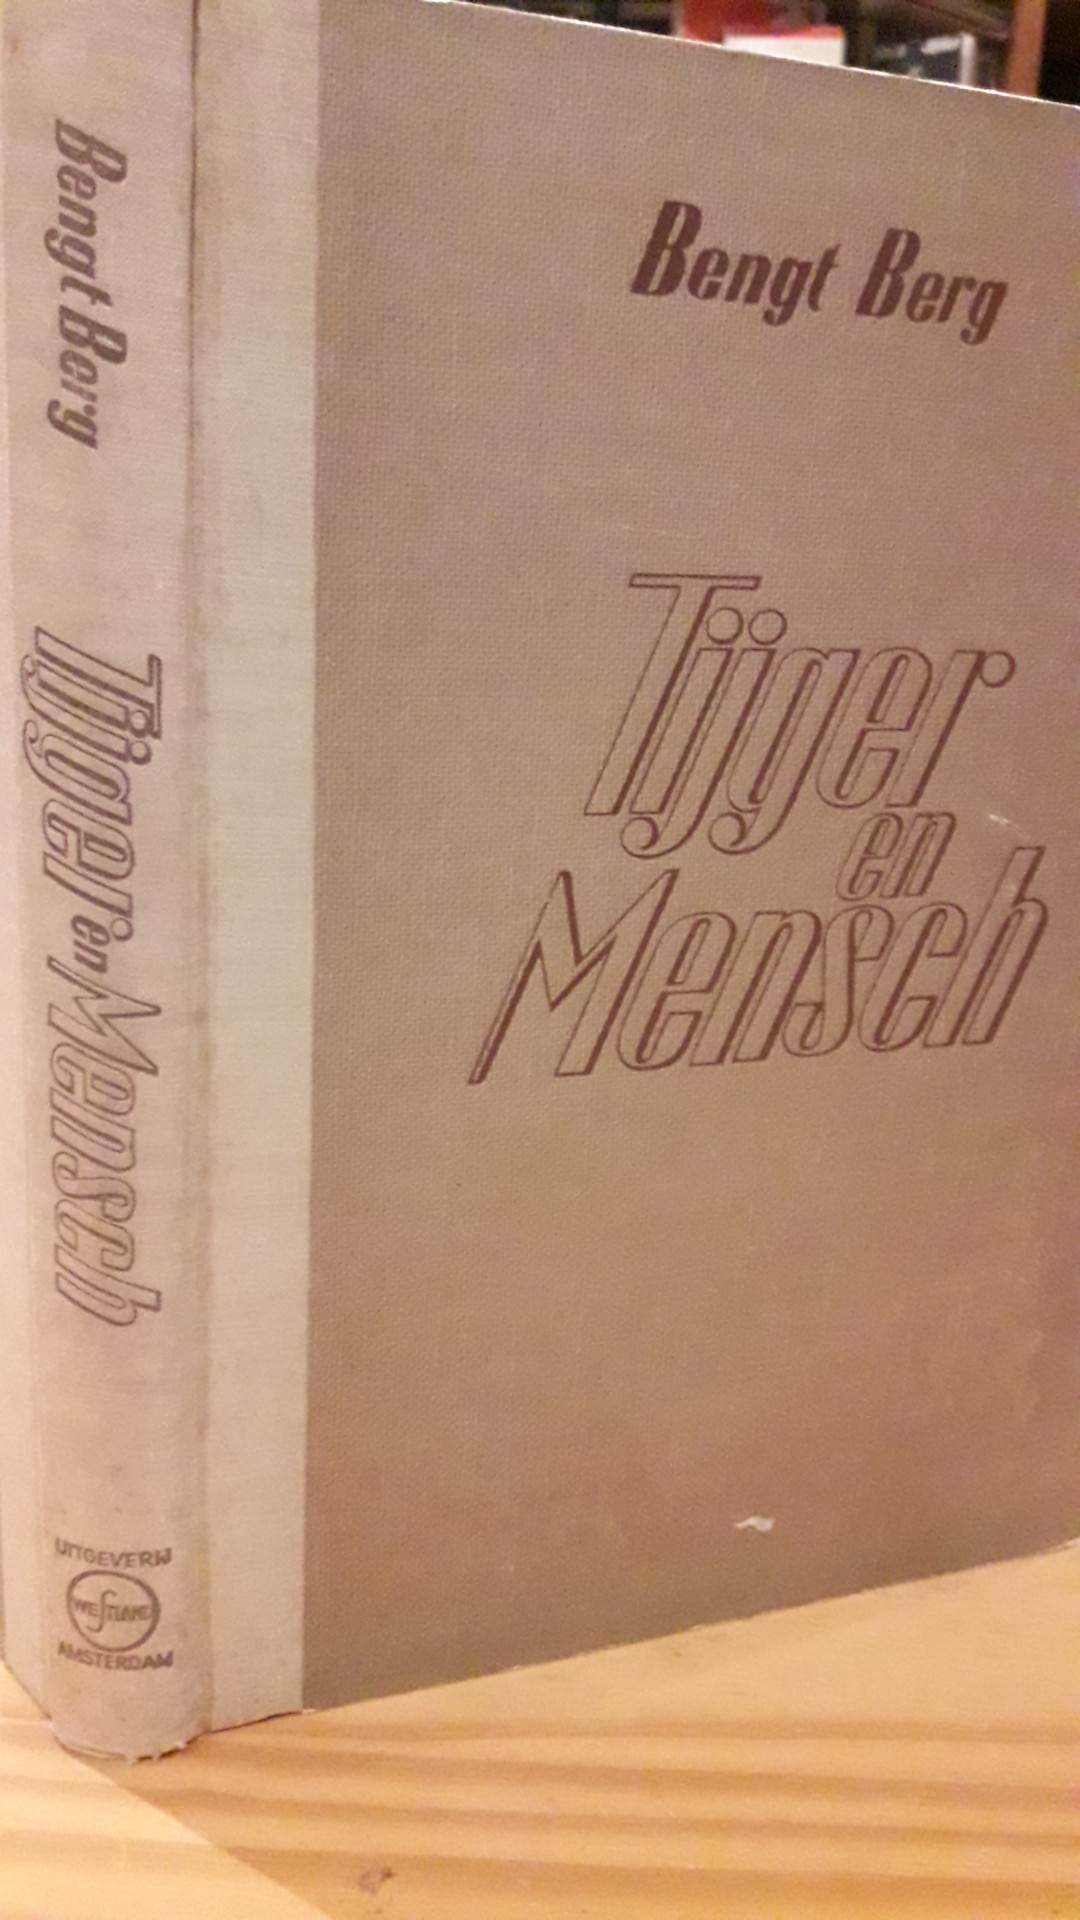 Tijger en mensch - 200 blz / WESTLAND 1943 Nederlandse collaboratie uitgeverij